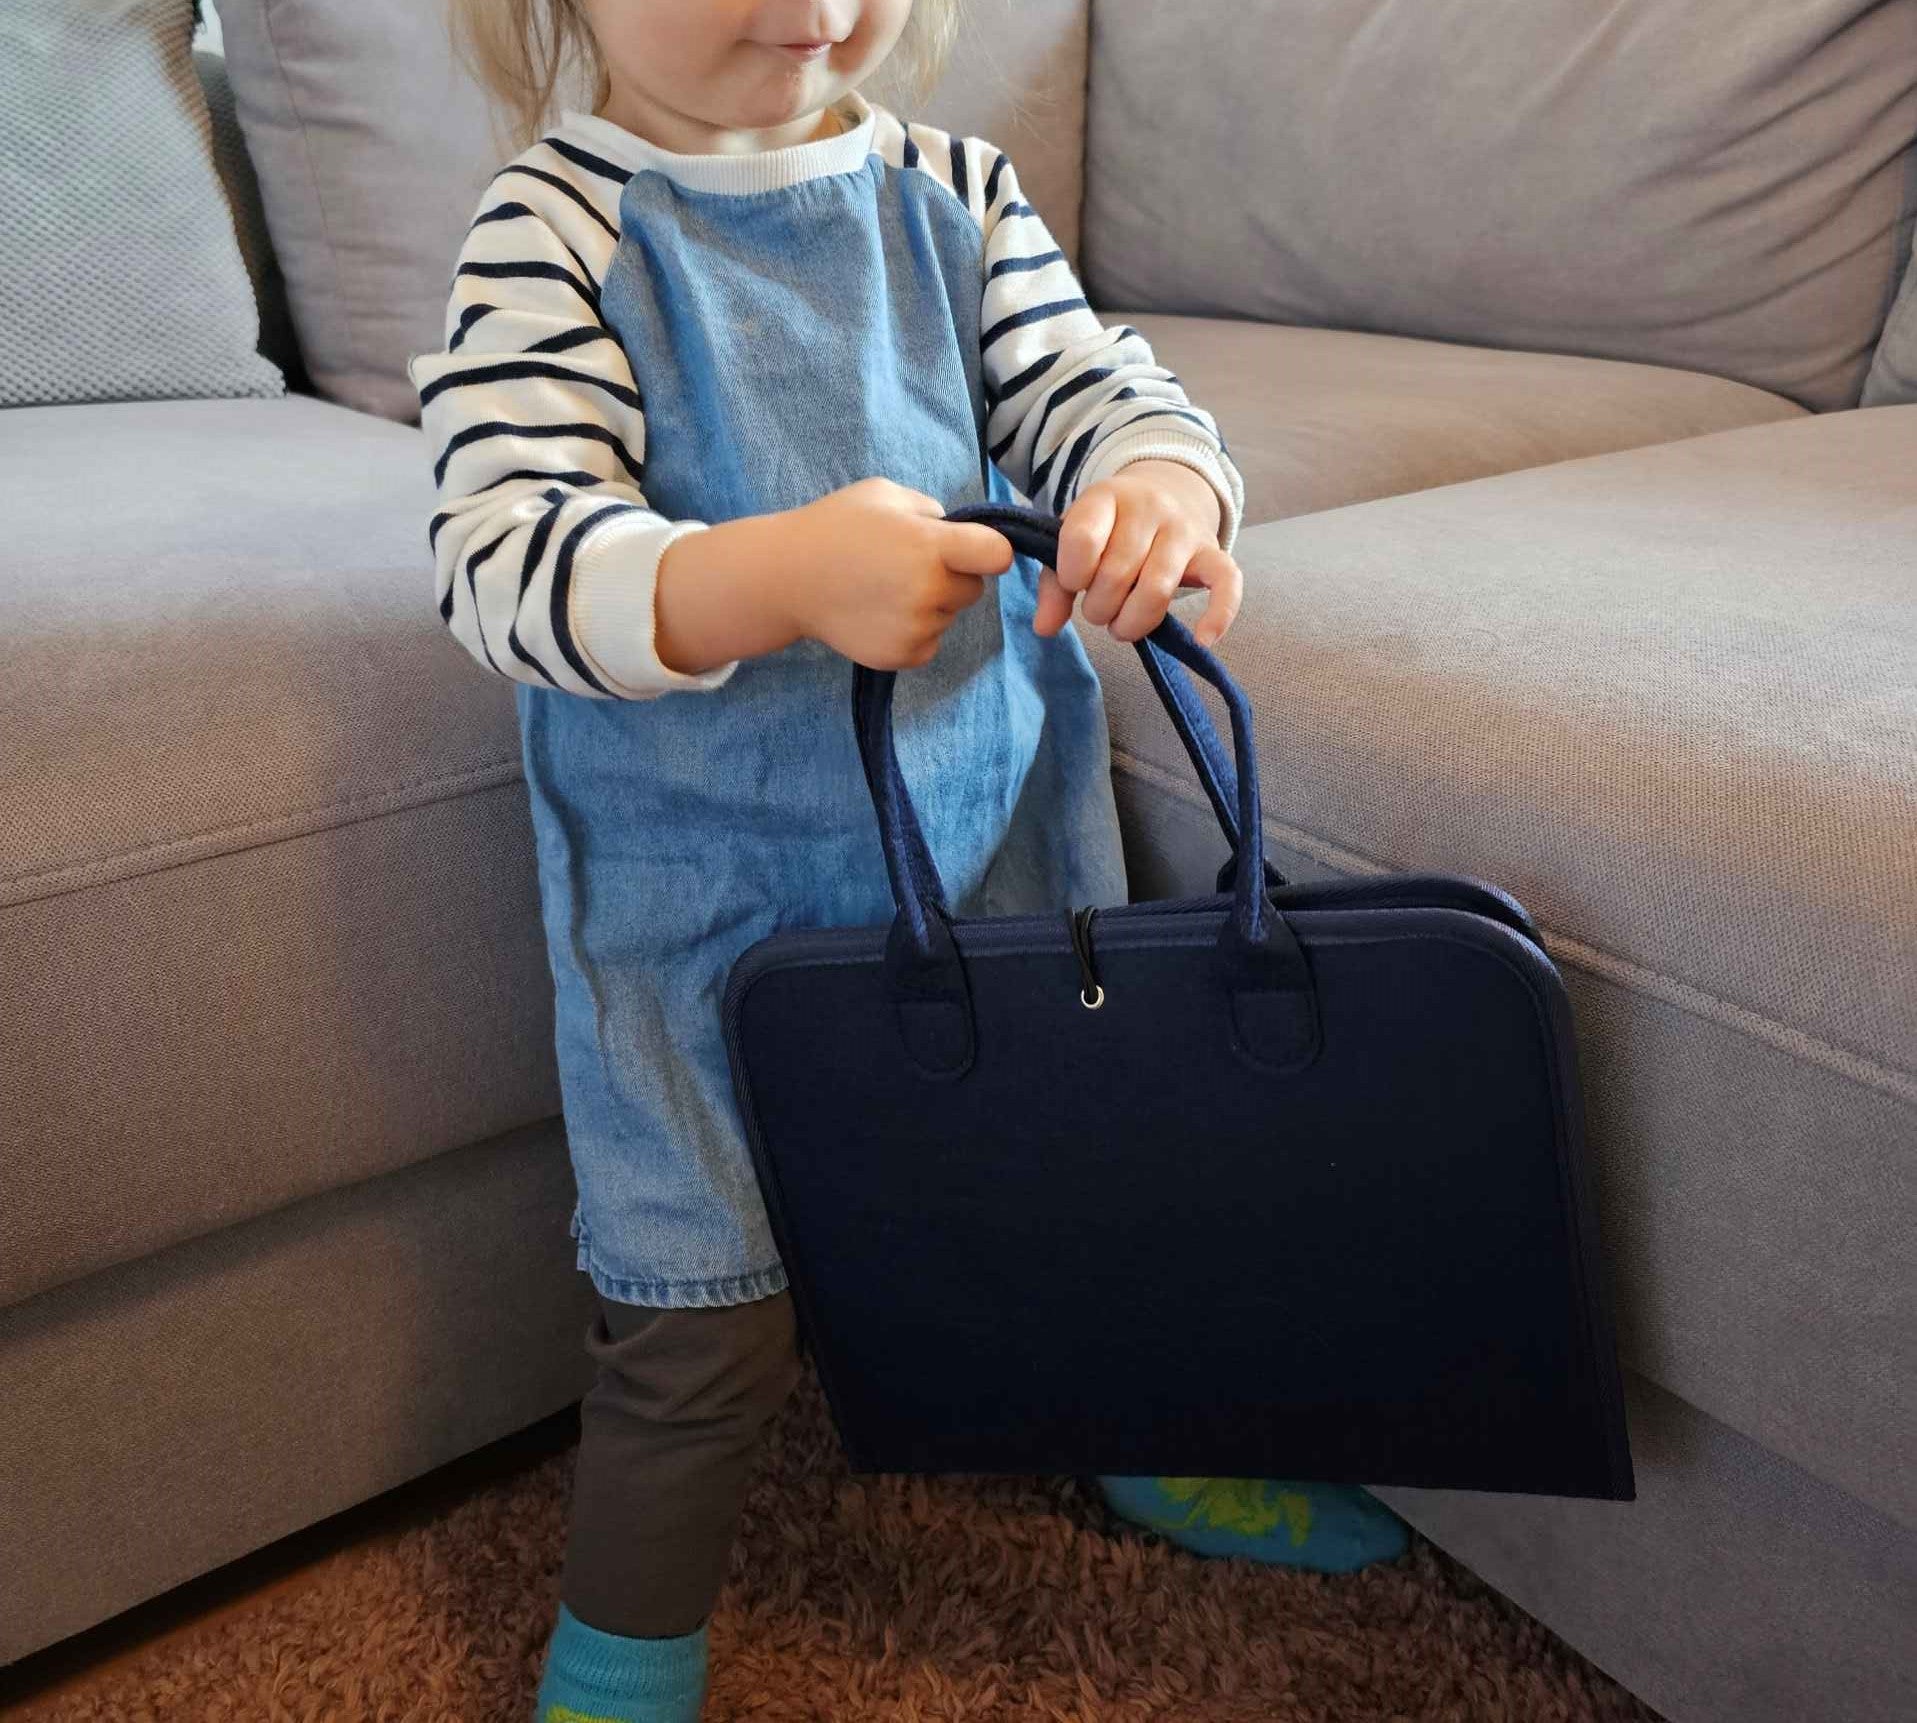 Ein kleines Mädchen das voller stolz ihren Lernkoffer in den Händen hält.